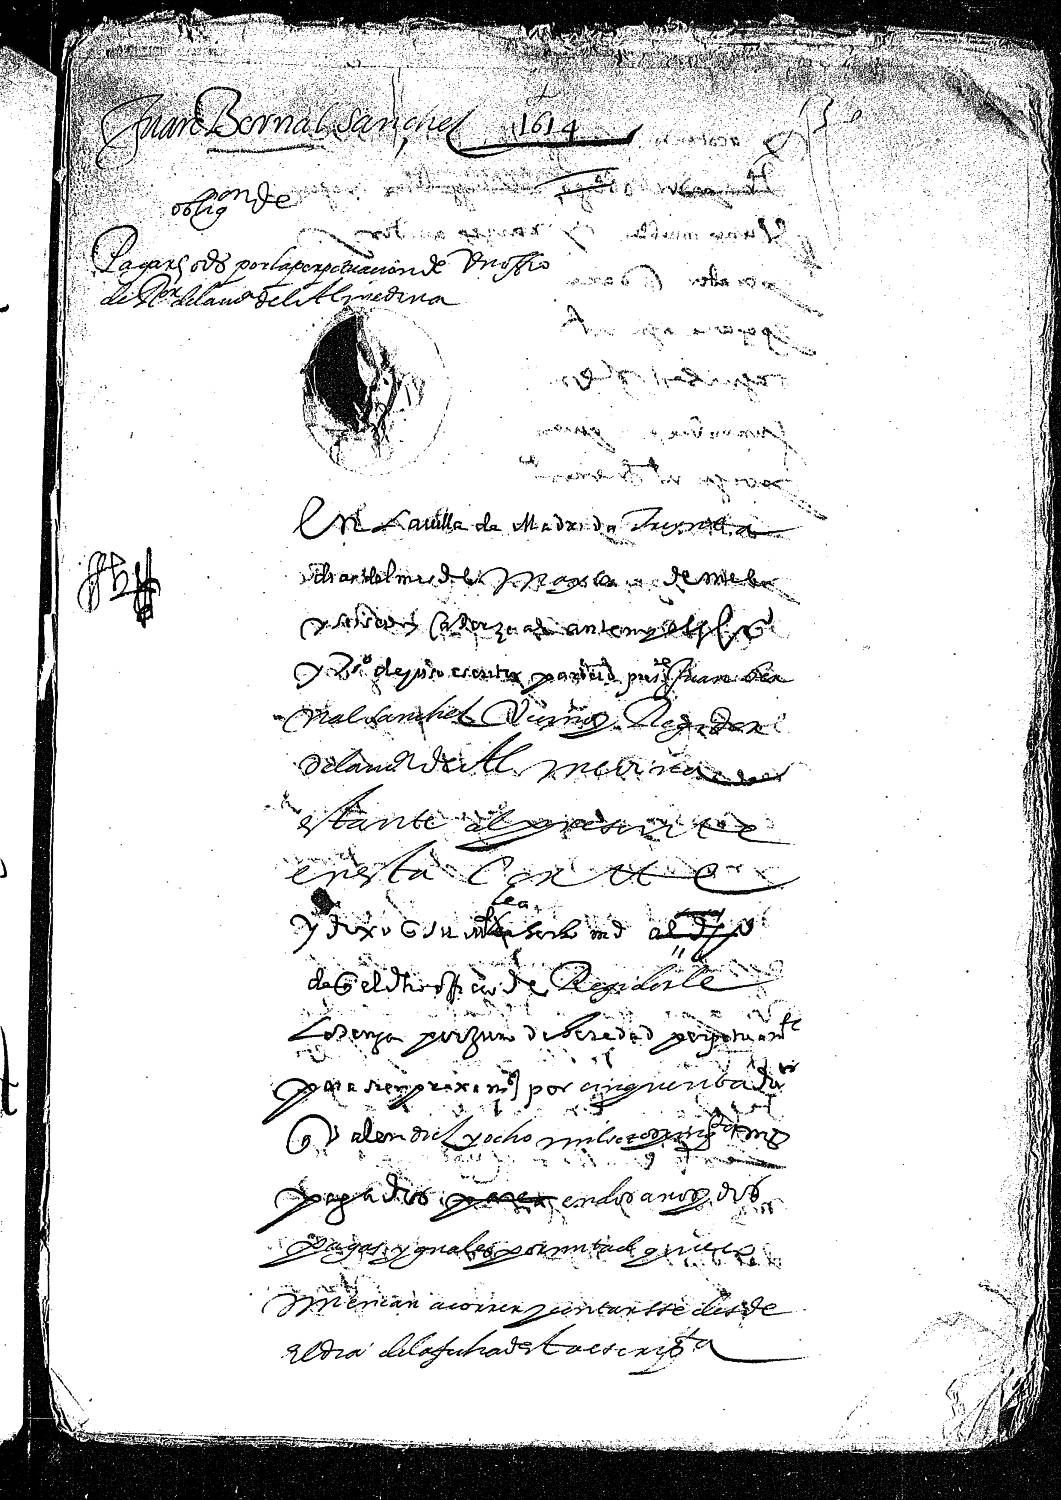 Acta notarial dando fe de la obligación de Juan Bernal Sánchez, vecino y regidor de Almedina, para pagar 50 ducados por la perpetuación de su oficio.